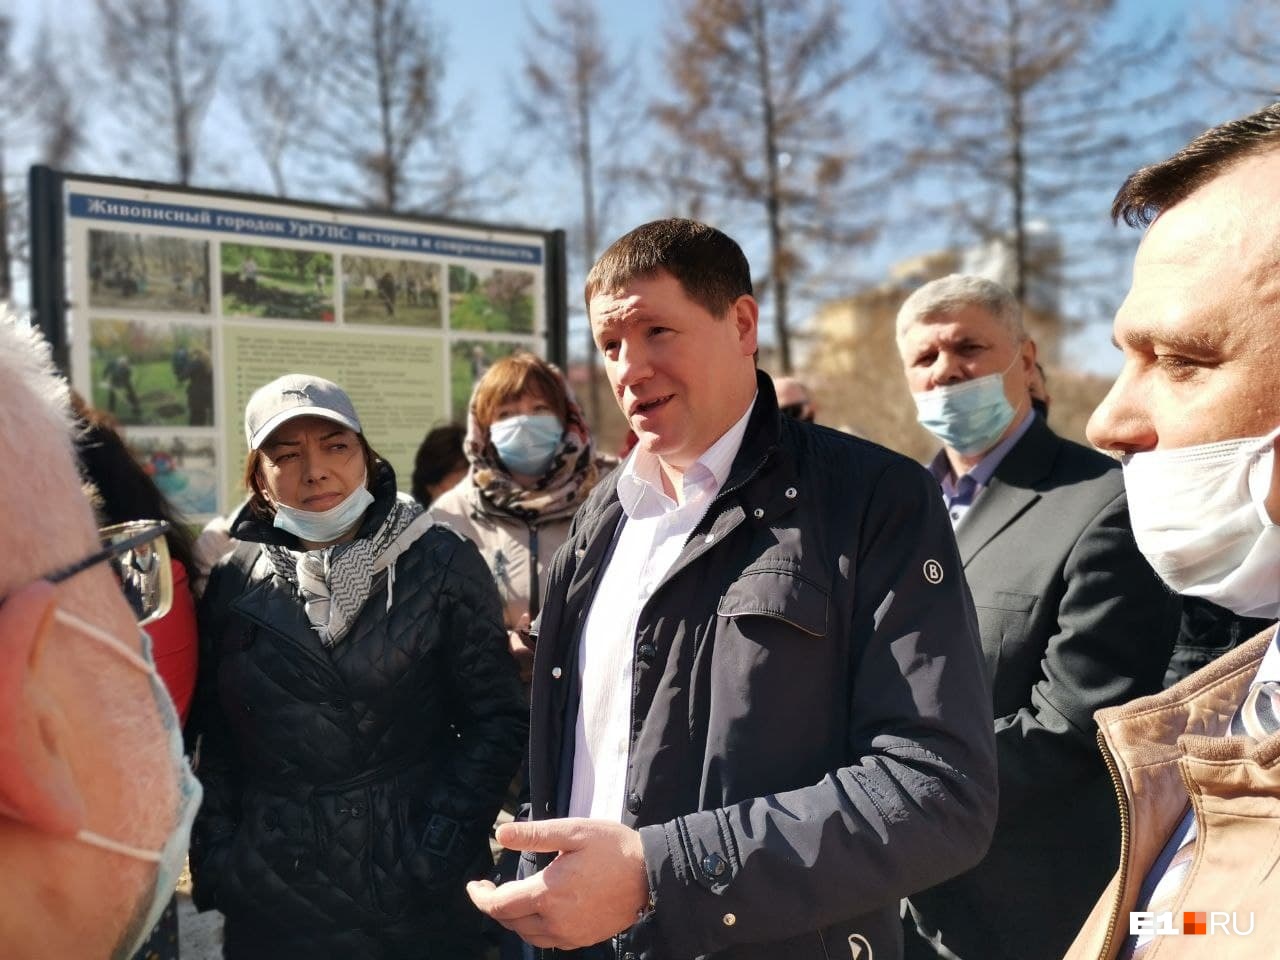 Вице-губернатор пообещал уговорить силовиков не строить сплошной забор вокруг парка УрГУПСа